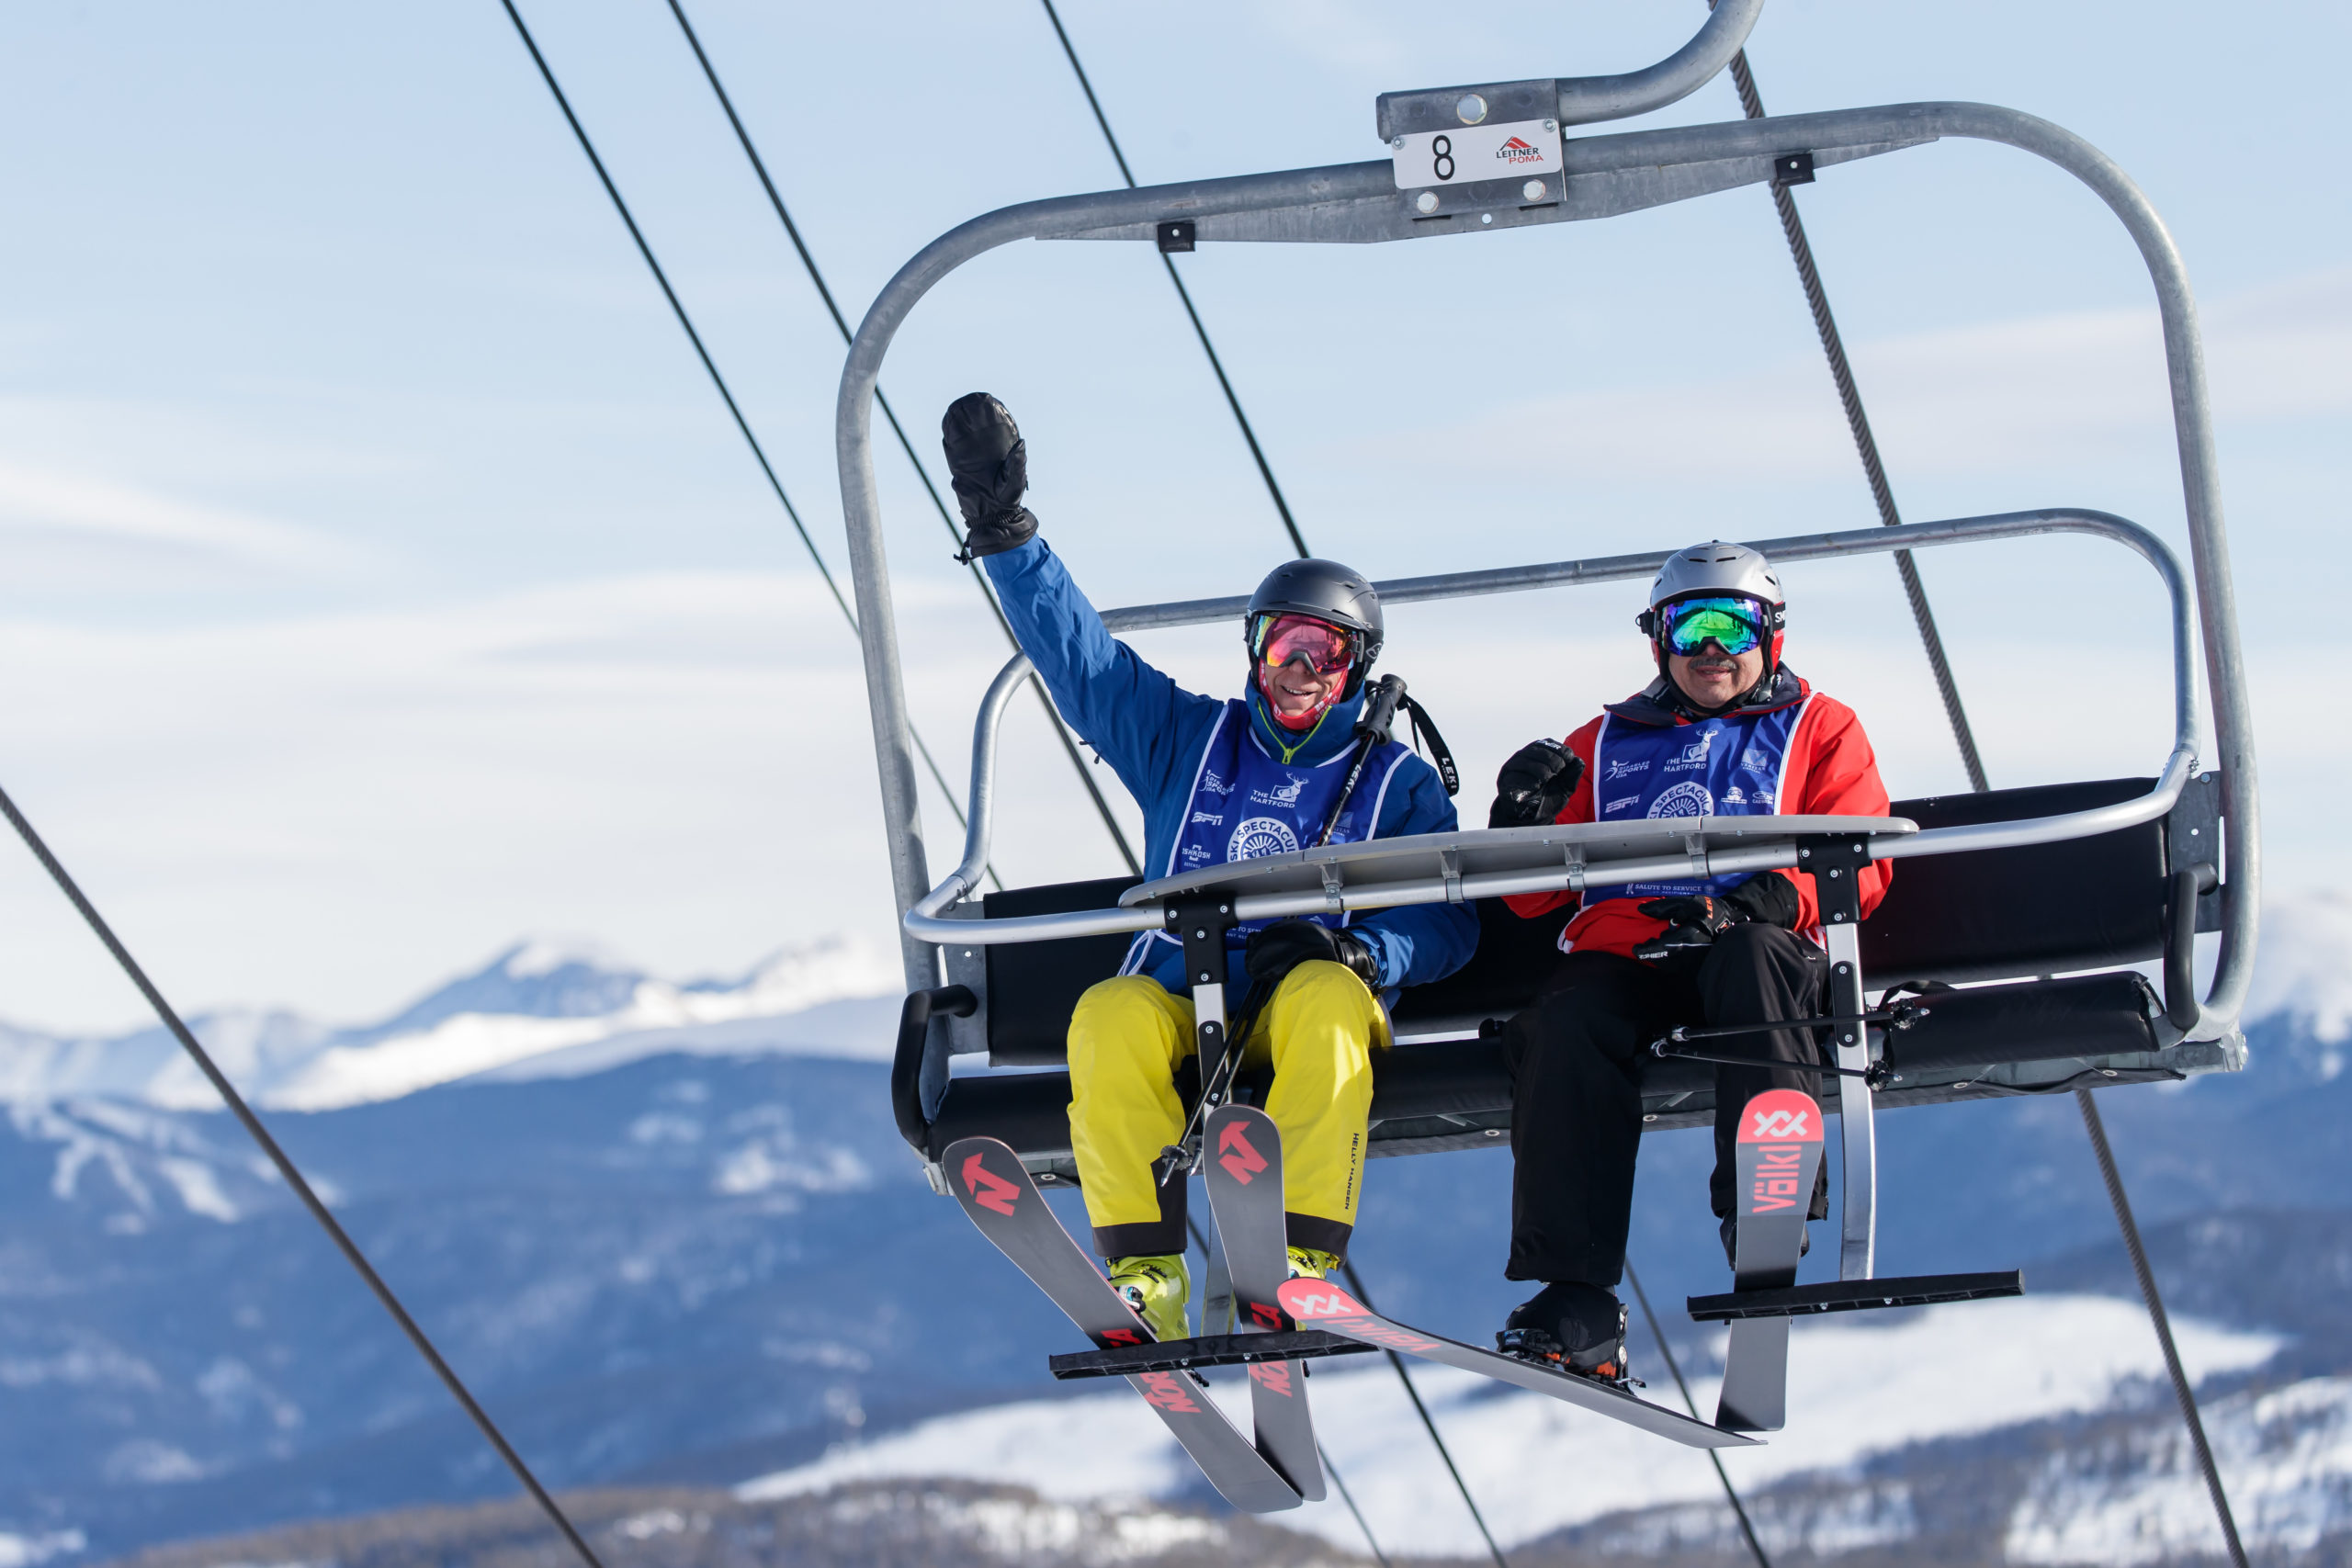 Two Ski Spec athletes on ski lift waving